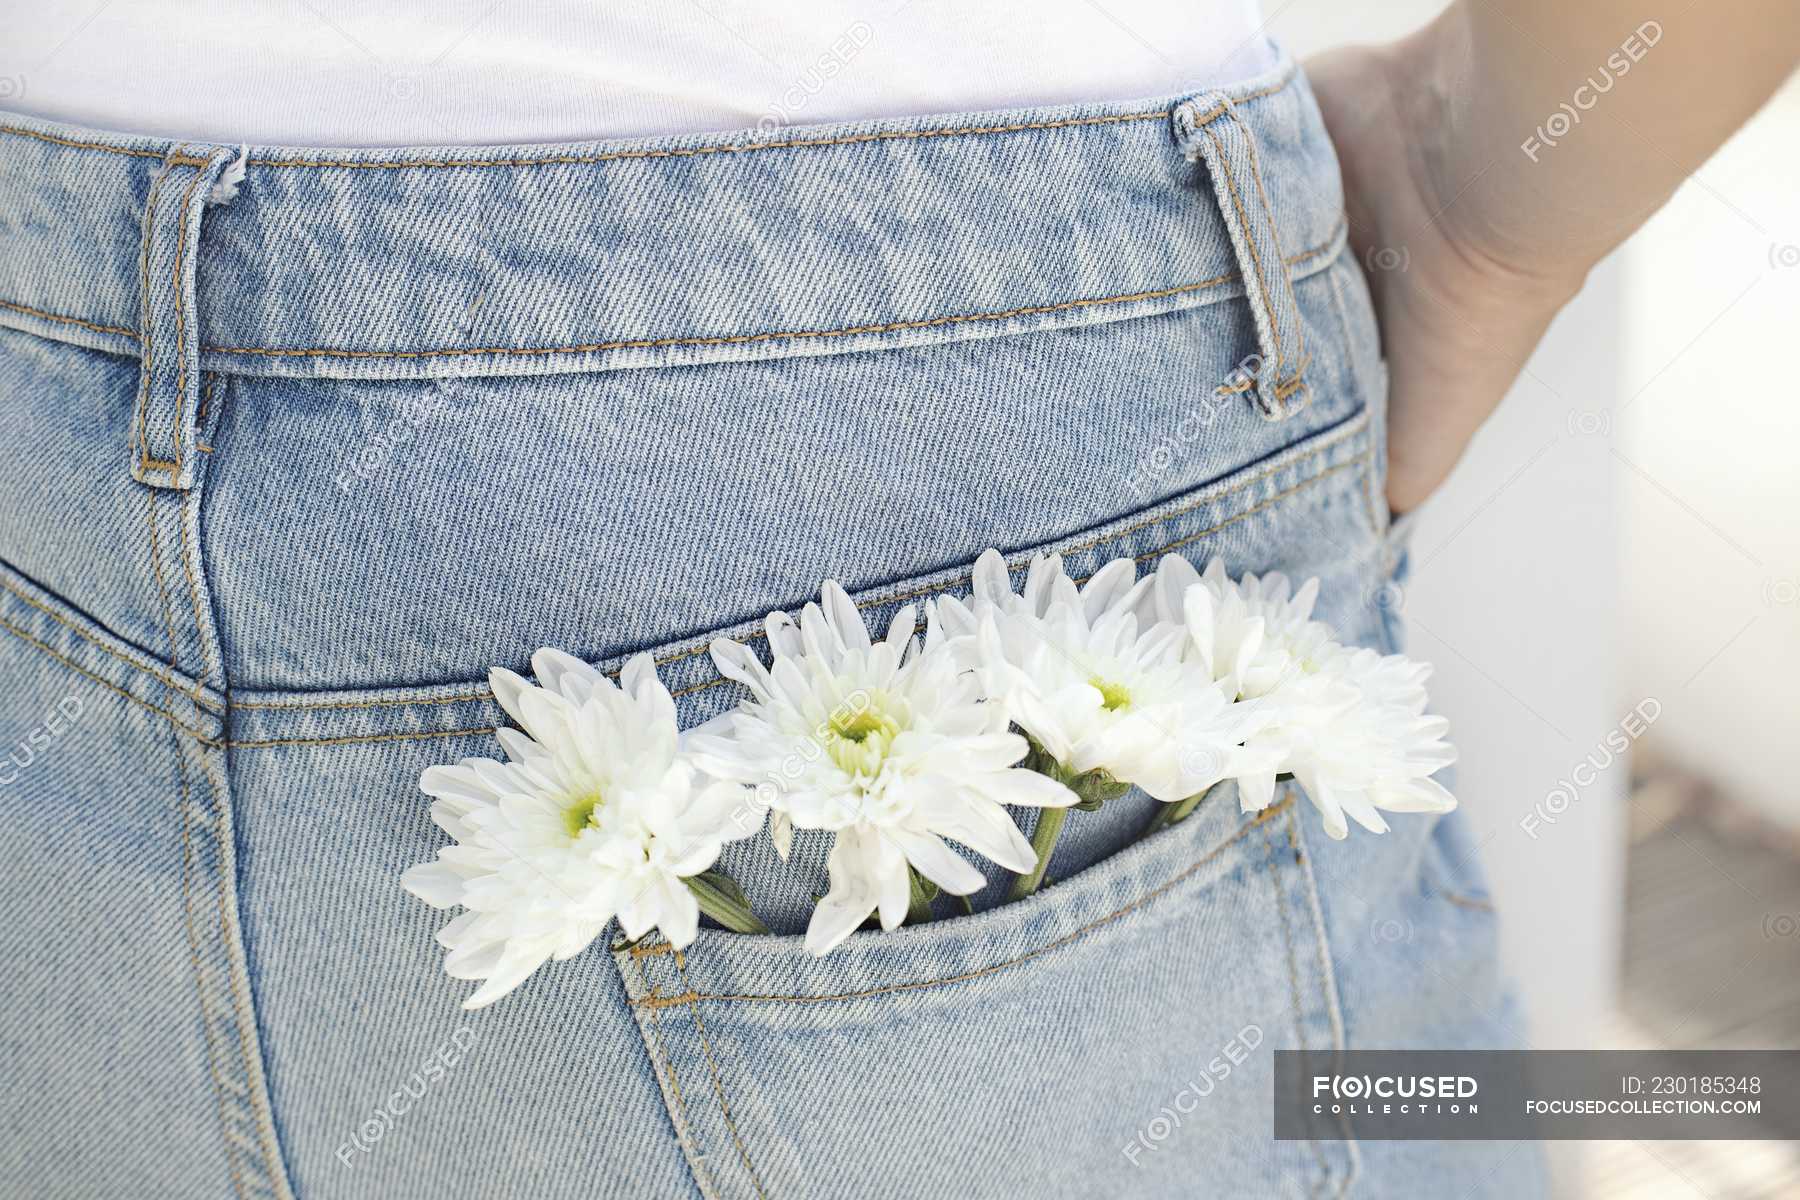 Цветы в кармане джинс